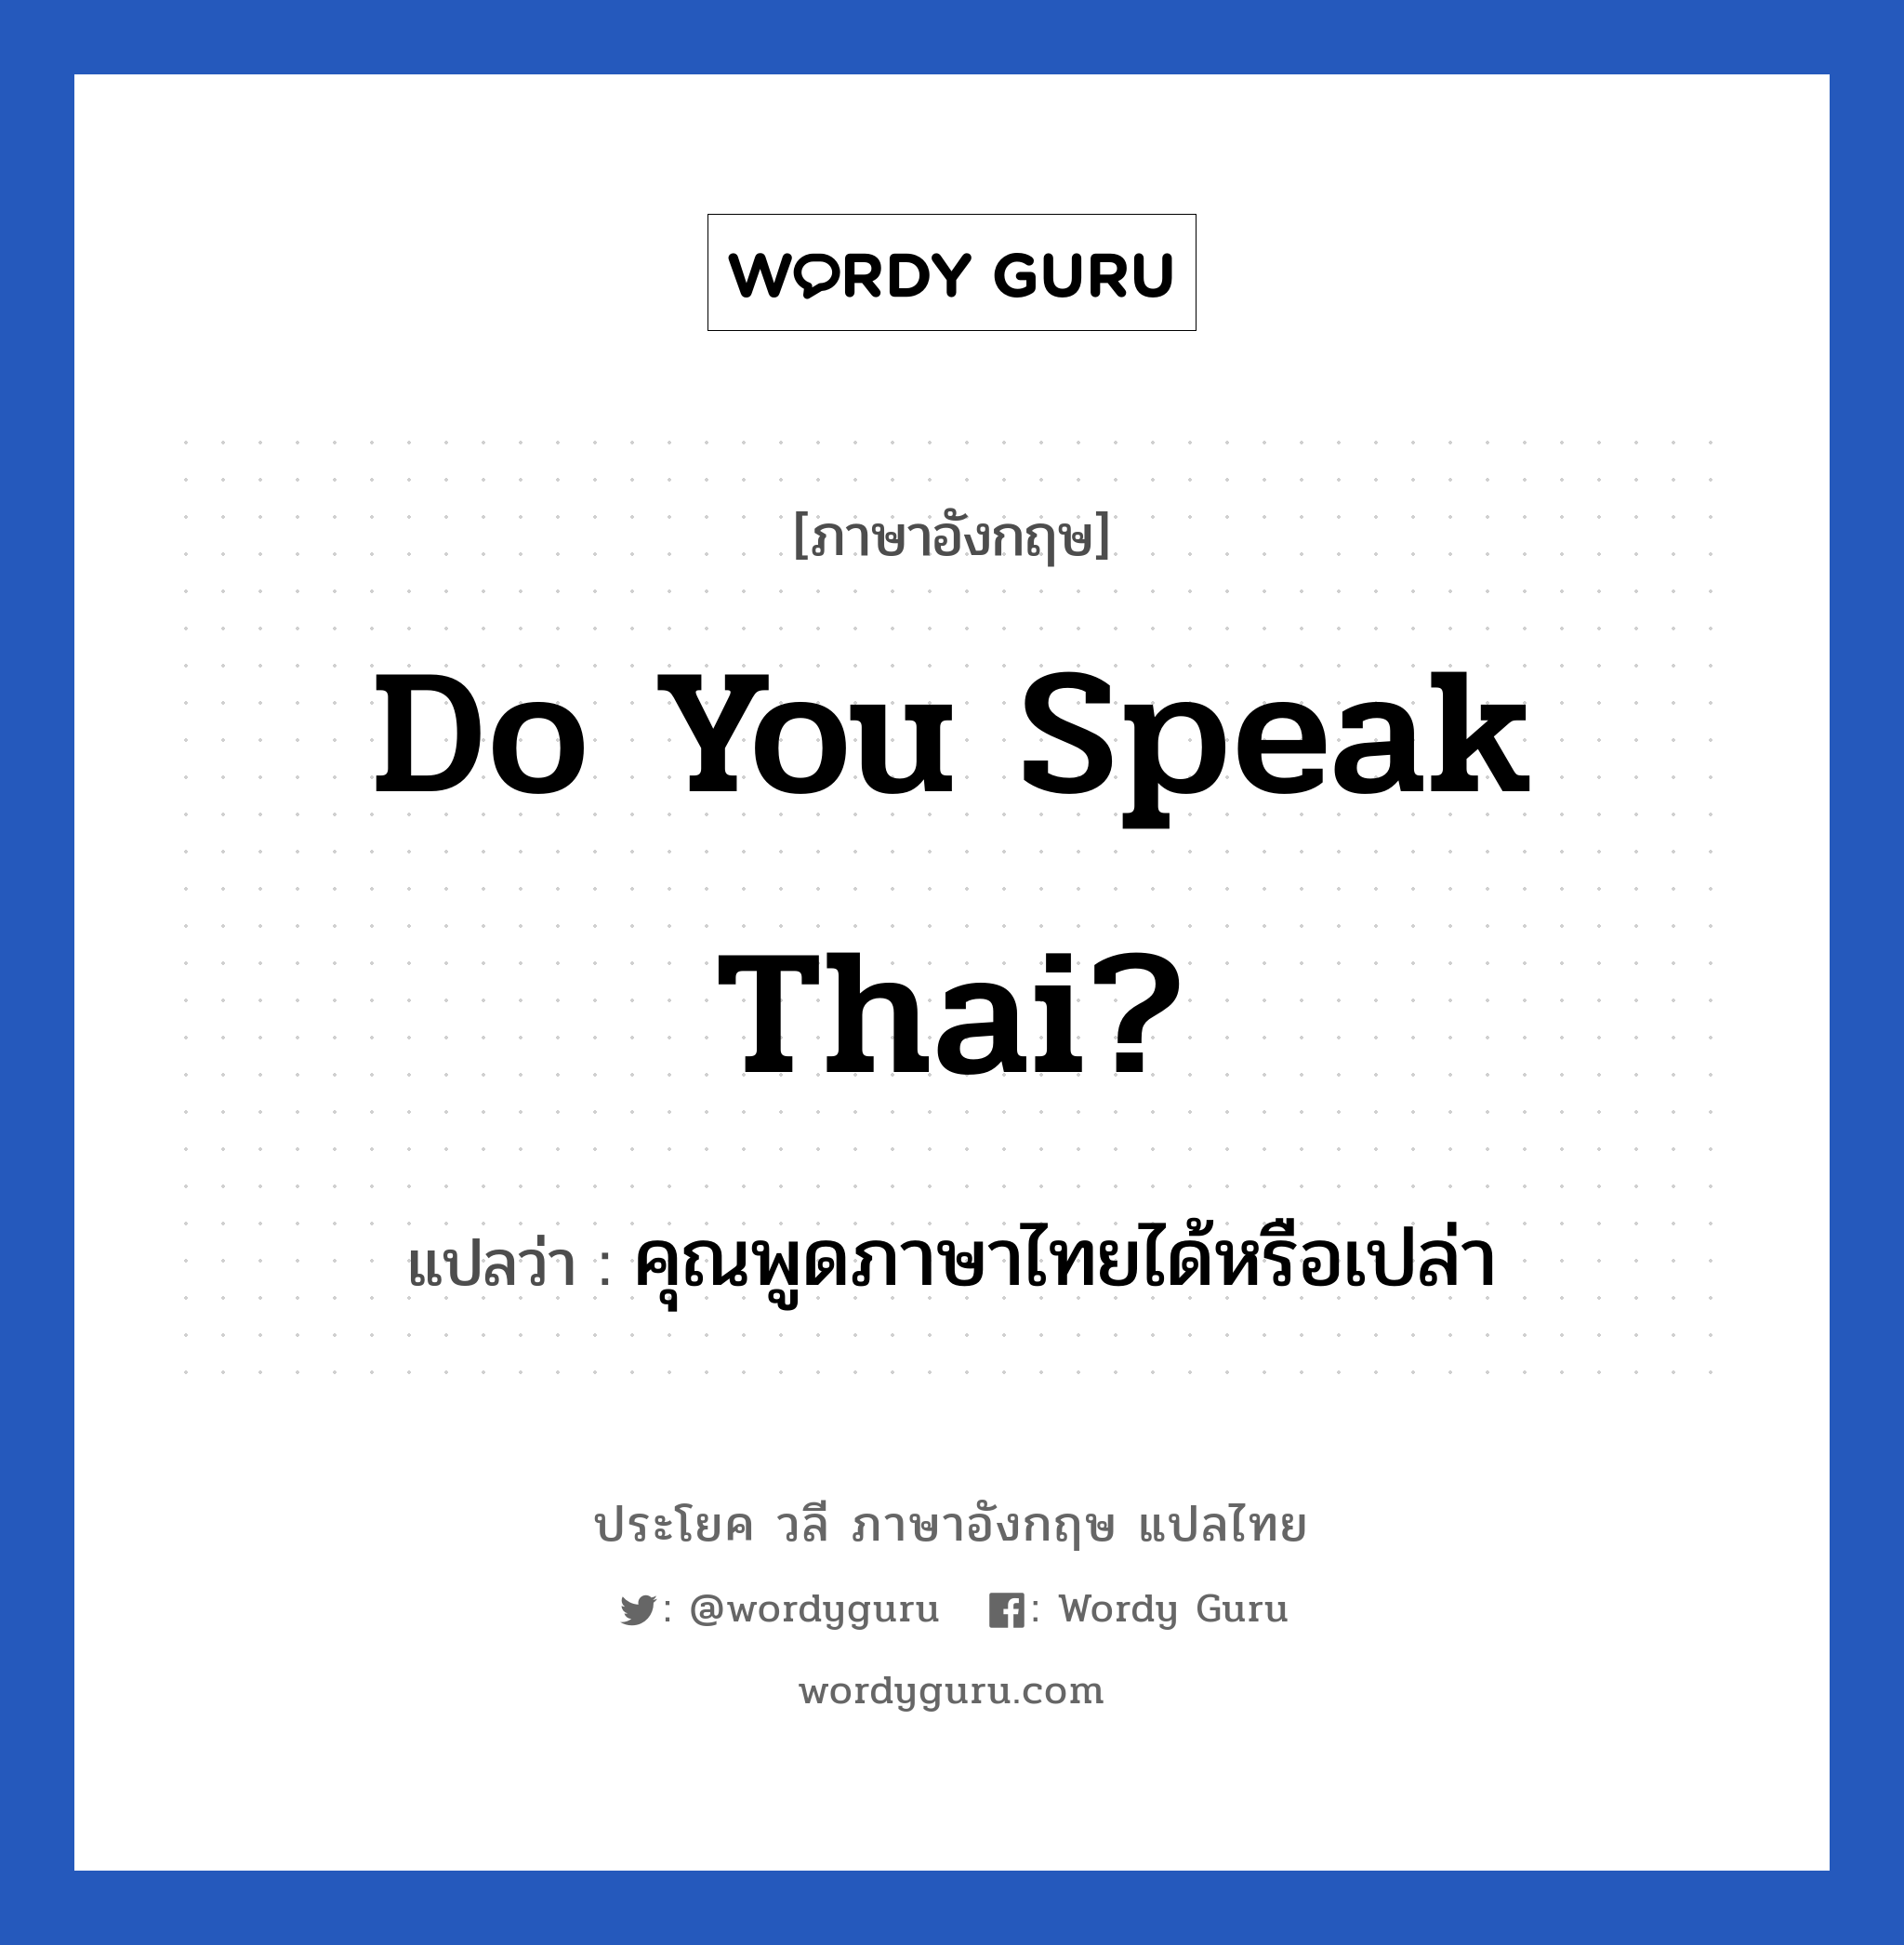 คุณพูดภาษาไทยได้หรือเปล่า ภาษาอังกฤษ?, วลีภาษาอังกฤษ คุณพูดภาษาไทยได้หรือเปล่า แปลว่า Do You Speak Thai?